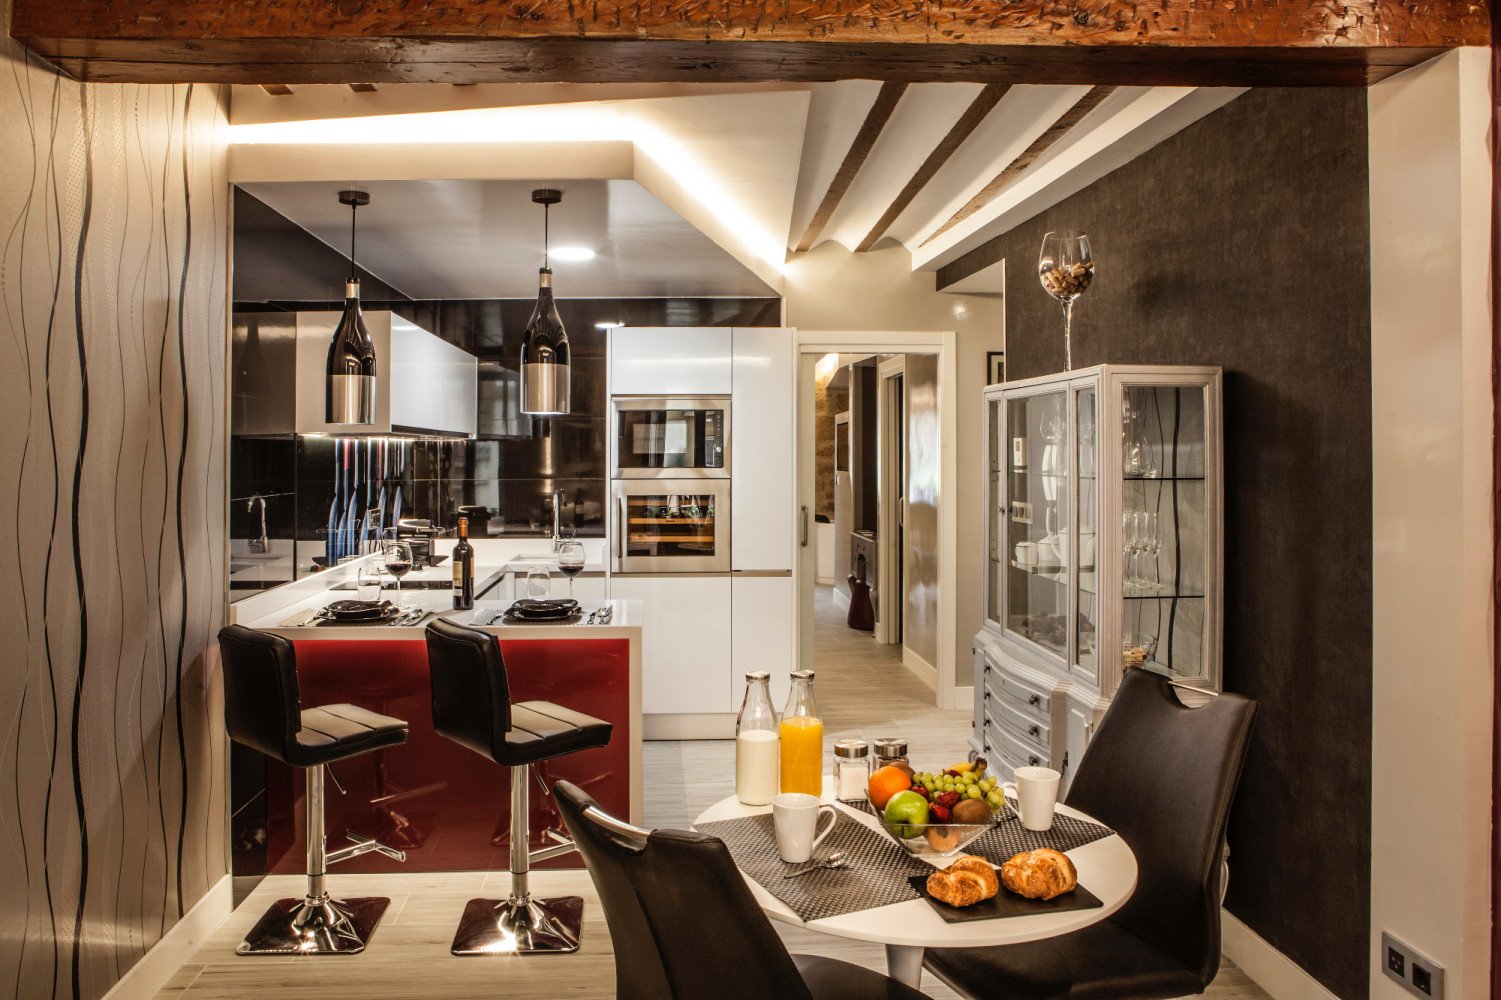 El mejor alojamiento en La Rioja según Booking es un apartahotel a muy buen precio: puntuación de 9,8